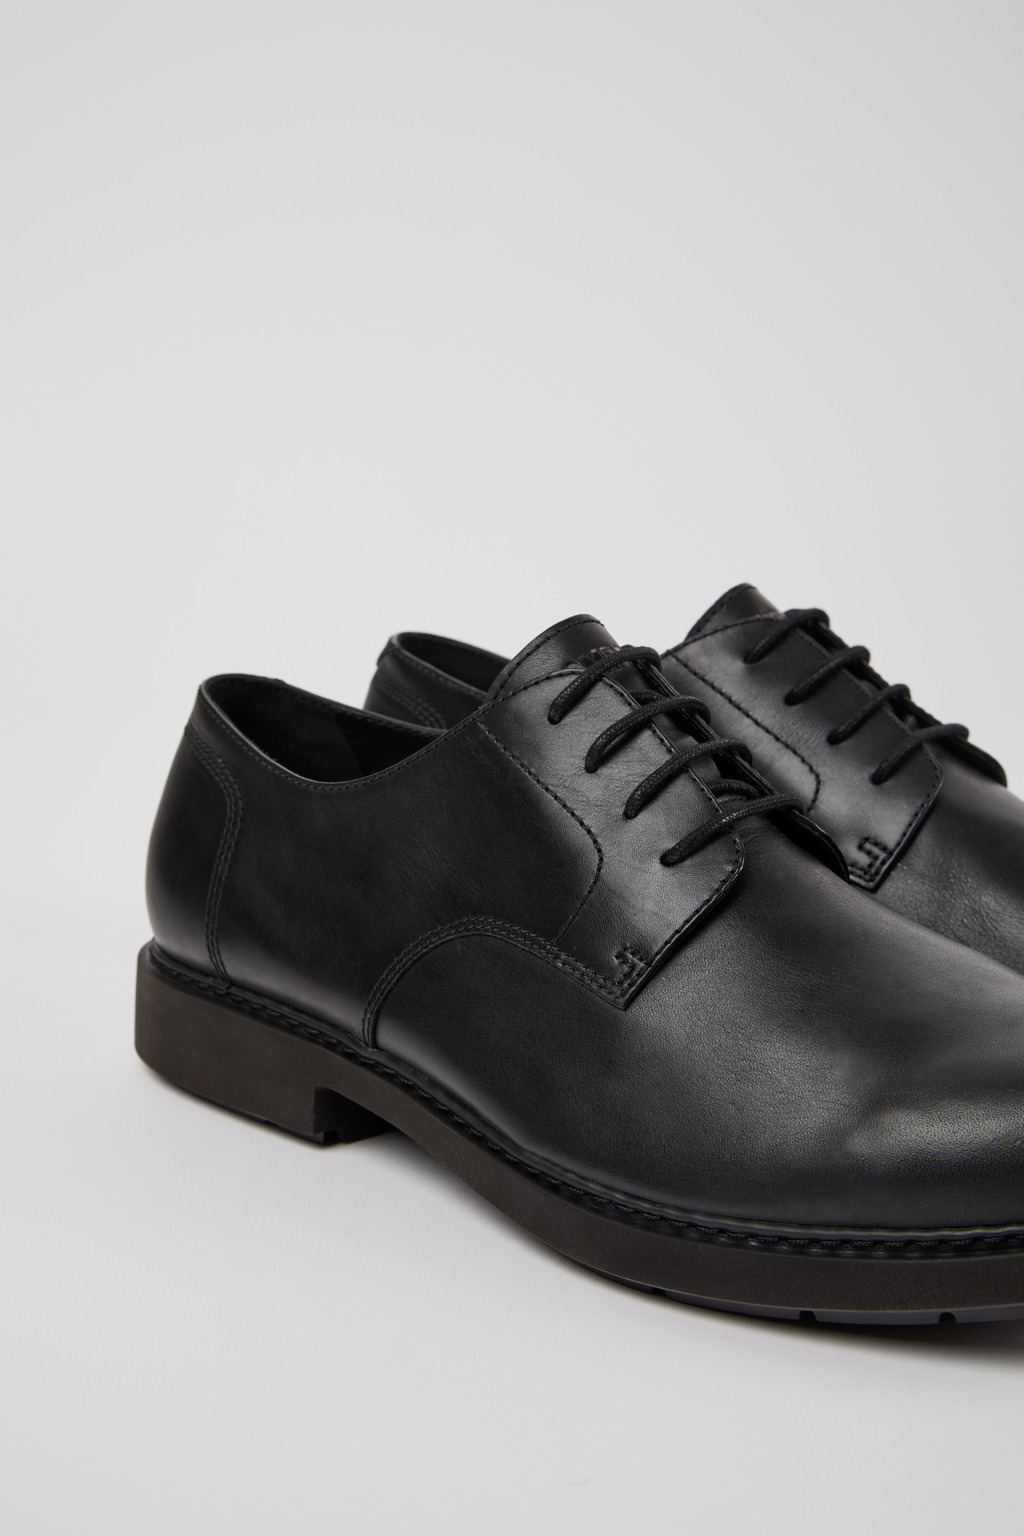 Neuman Black Formal Shoes for Men - Camper Shoes